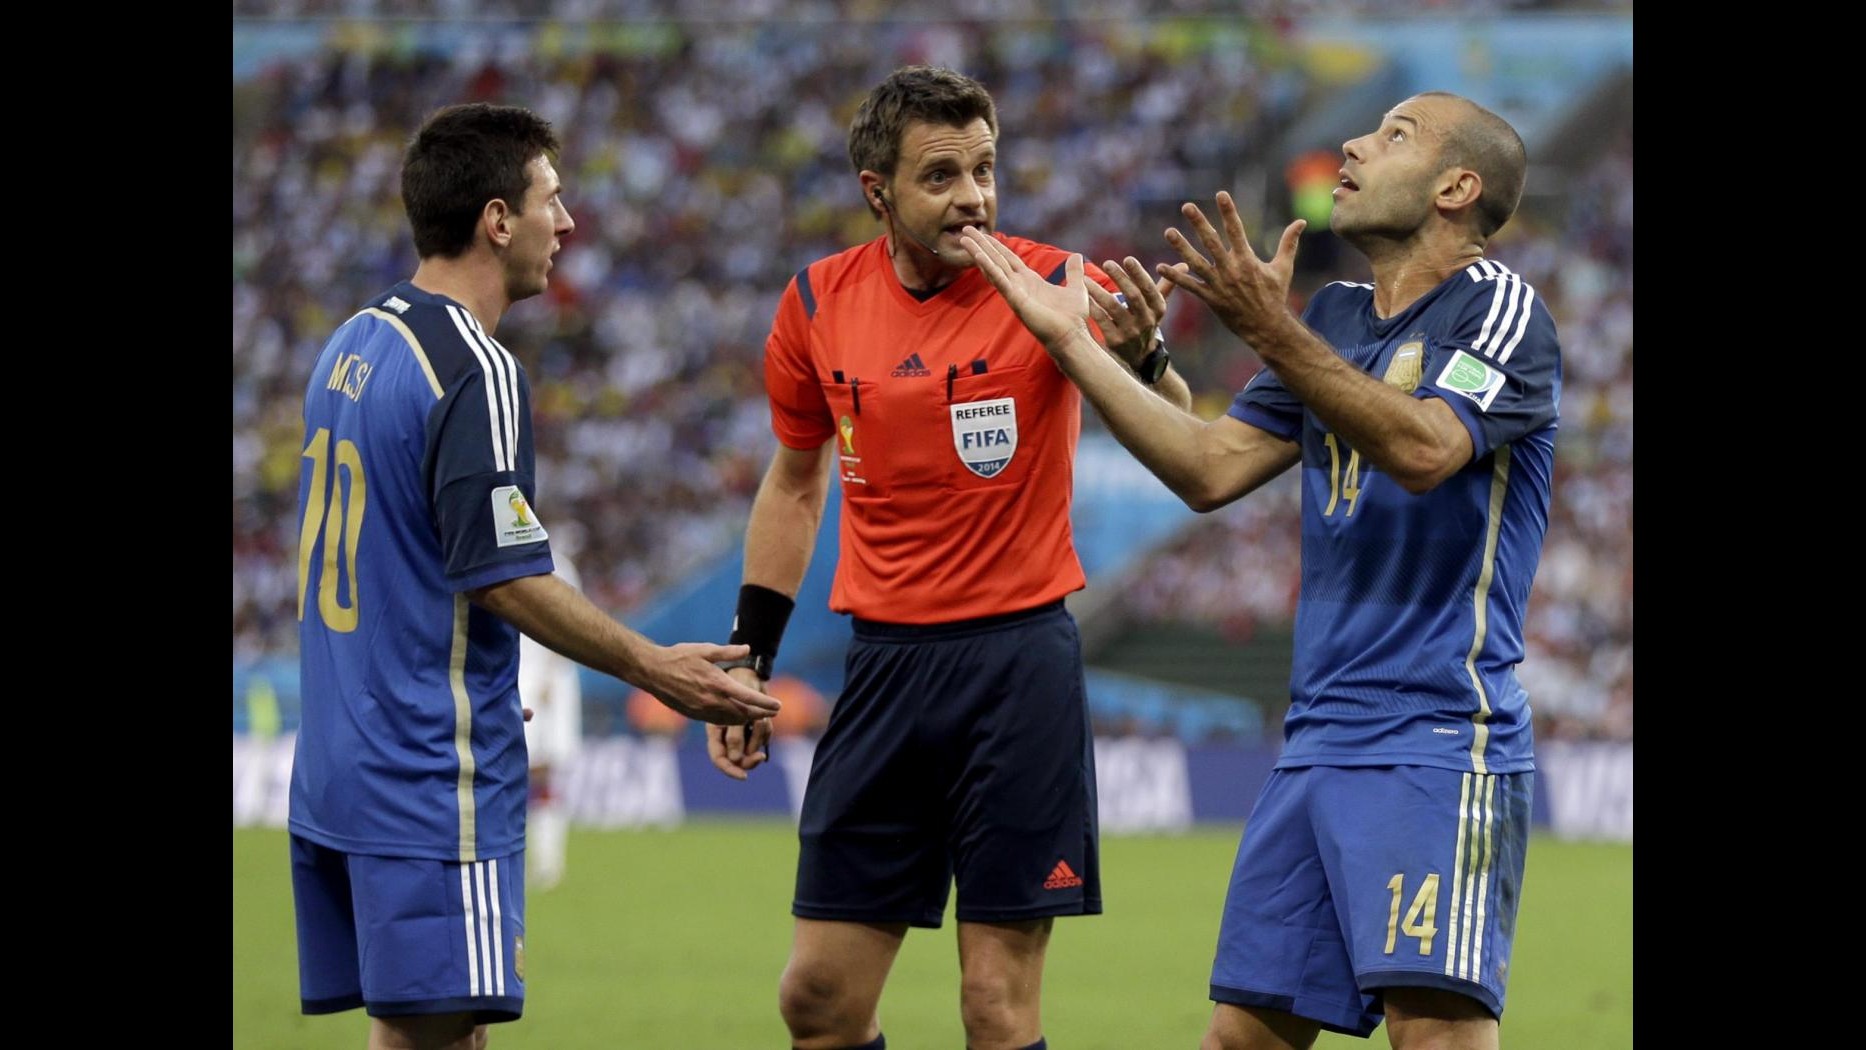 Mondiali 2014, Rizzoli: Grande emozione arbitrare finale, motivo d’orgoglio per l’Italia